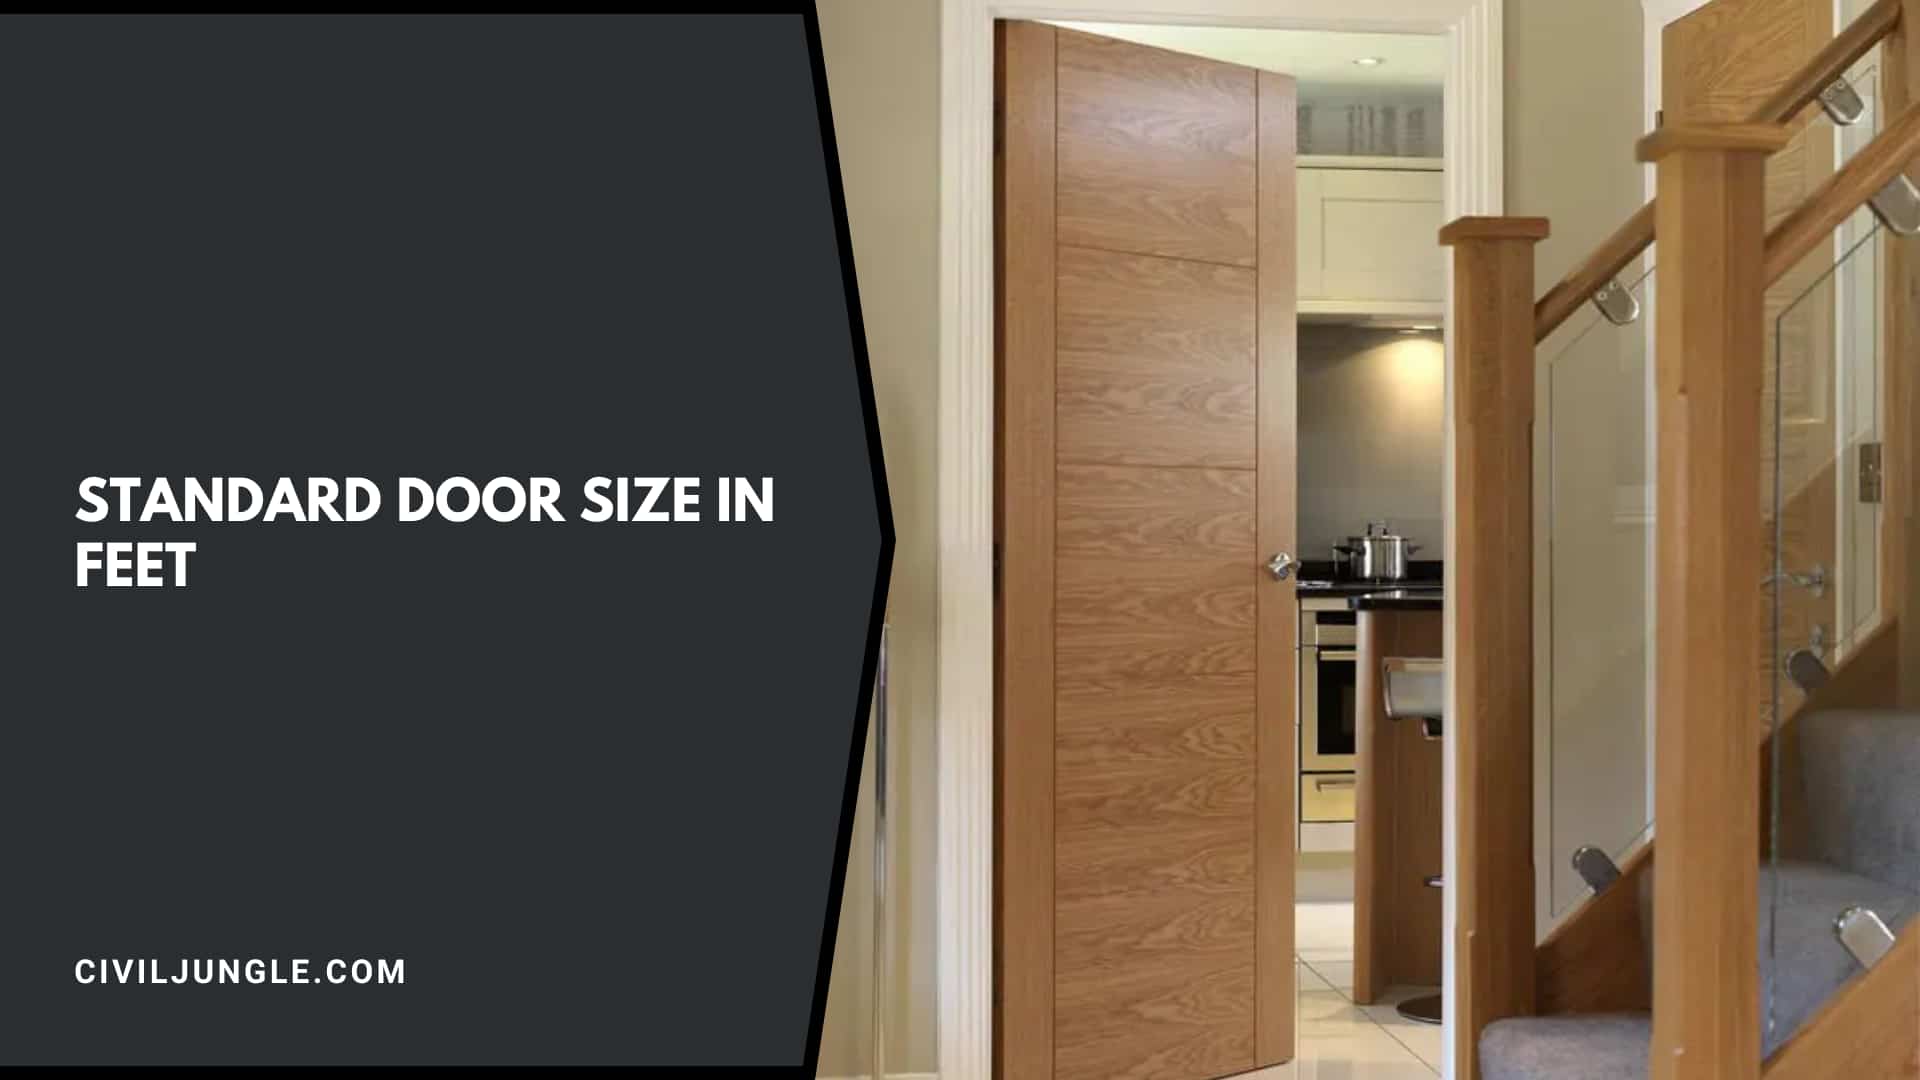 Standard Door Size in Feet